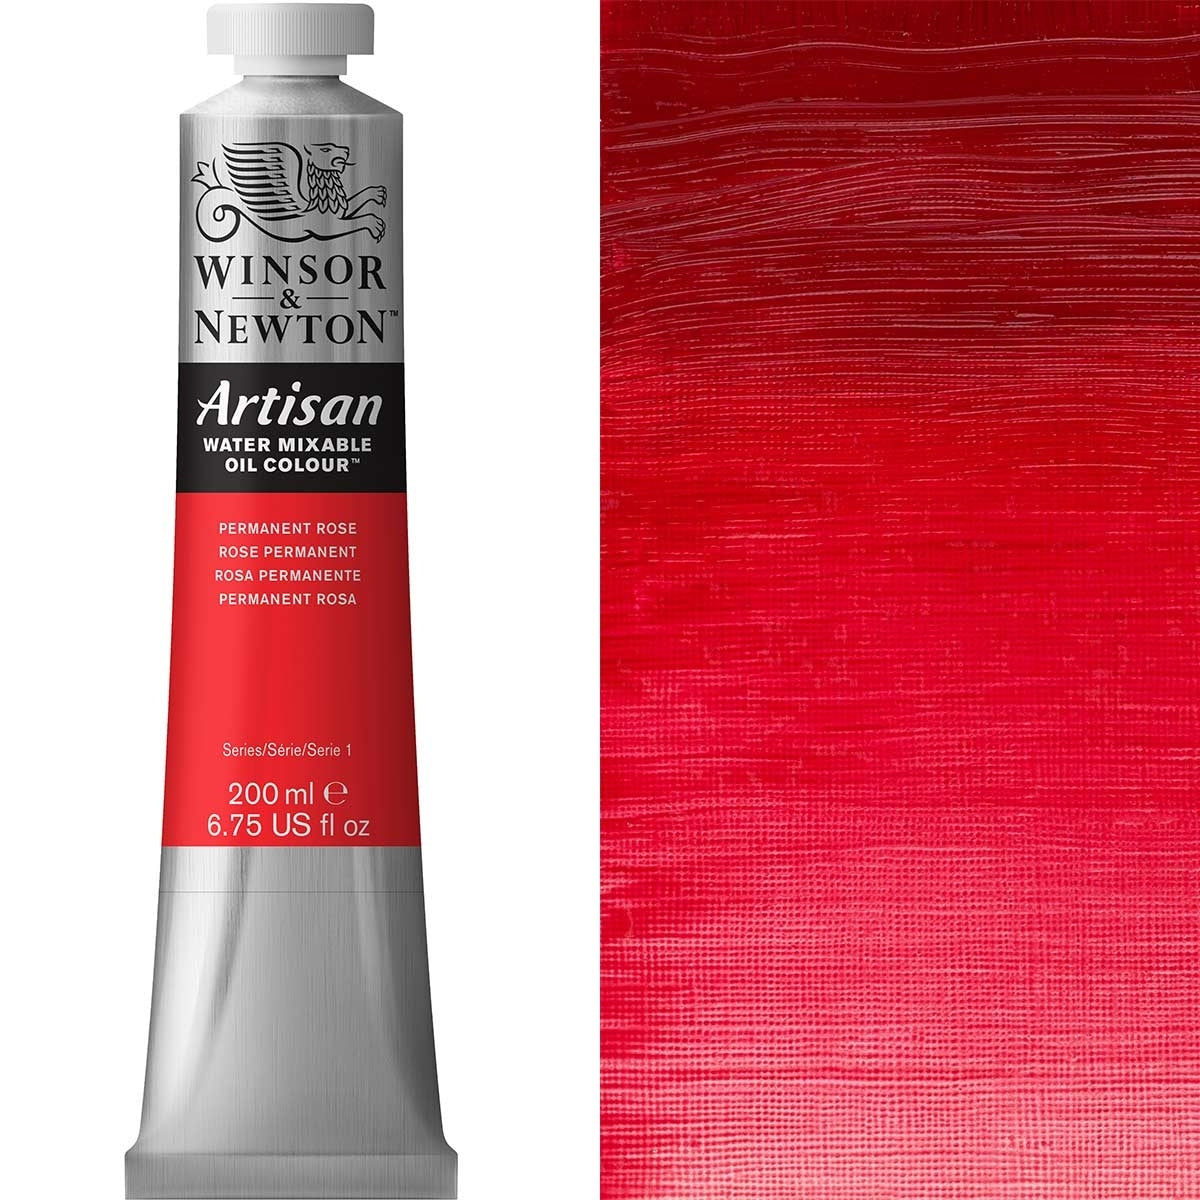 Winsor e Newton - Watermixable di colore olio artigianale - 200 ml - rosa permanente